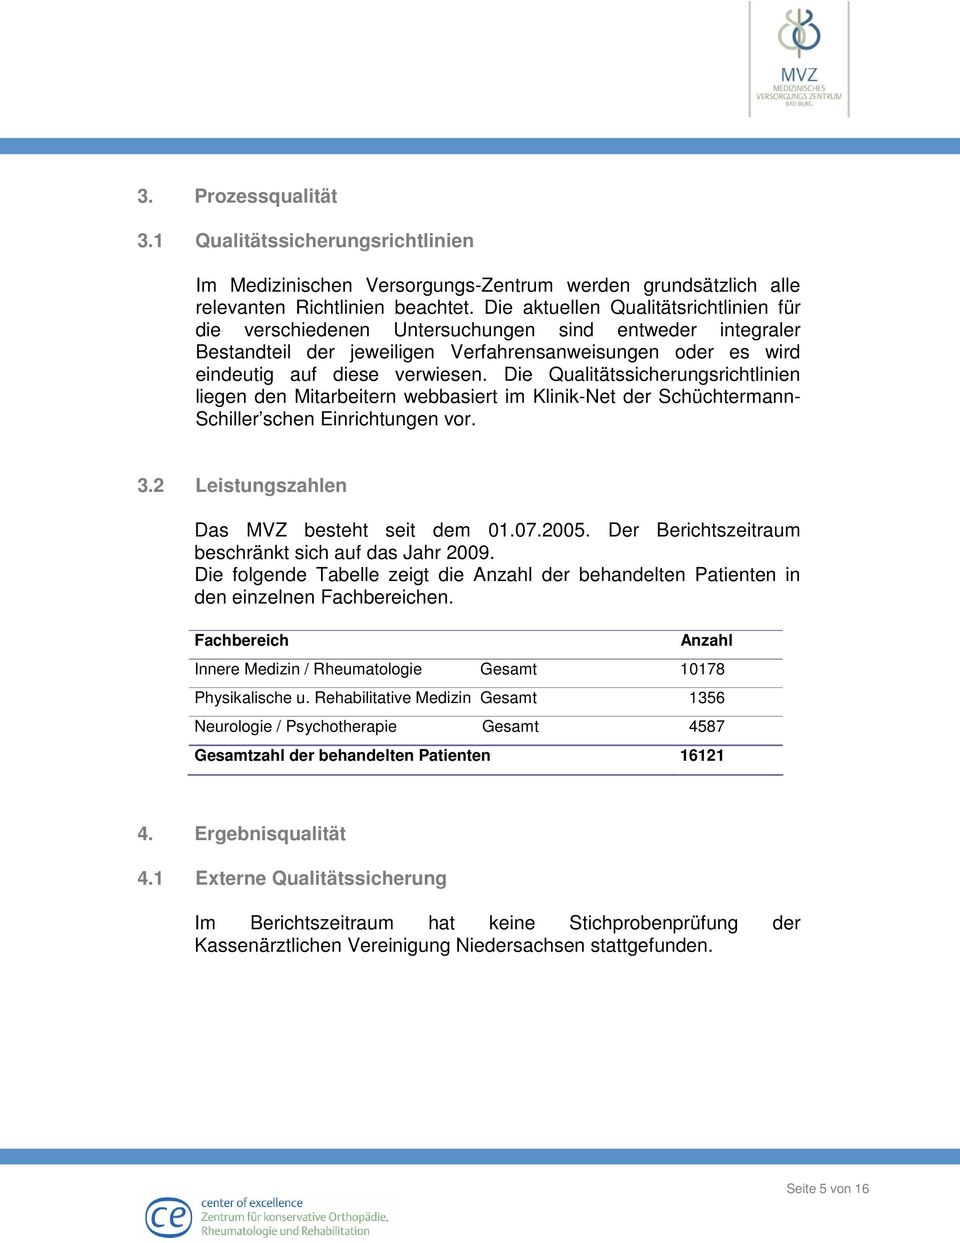 Die Qualitätssicherungsrichtlinien liegen den Mitarbeitern webbasiert im Klinik-Net der Schüchtermann- Schiller schen Einrichtungen vor. 3.2 Leistungszahlen Das MVZ besteht seit dem 01.07.2005.